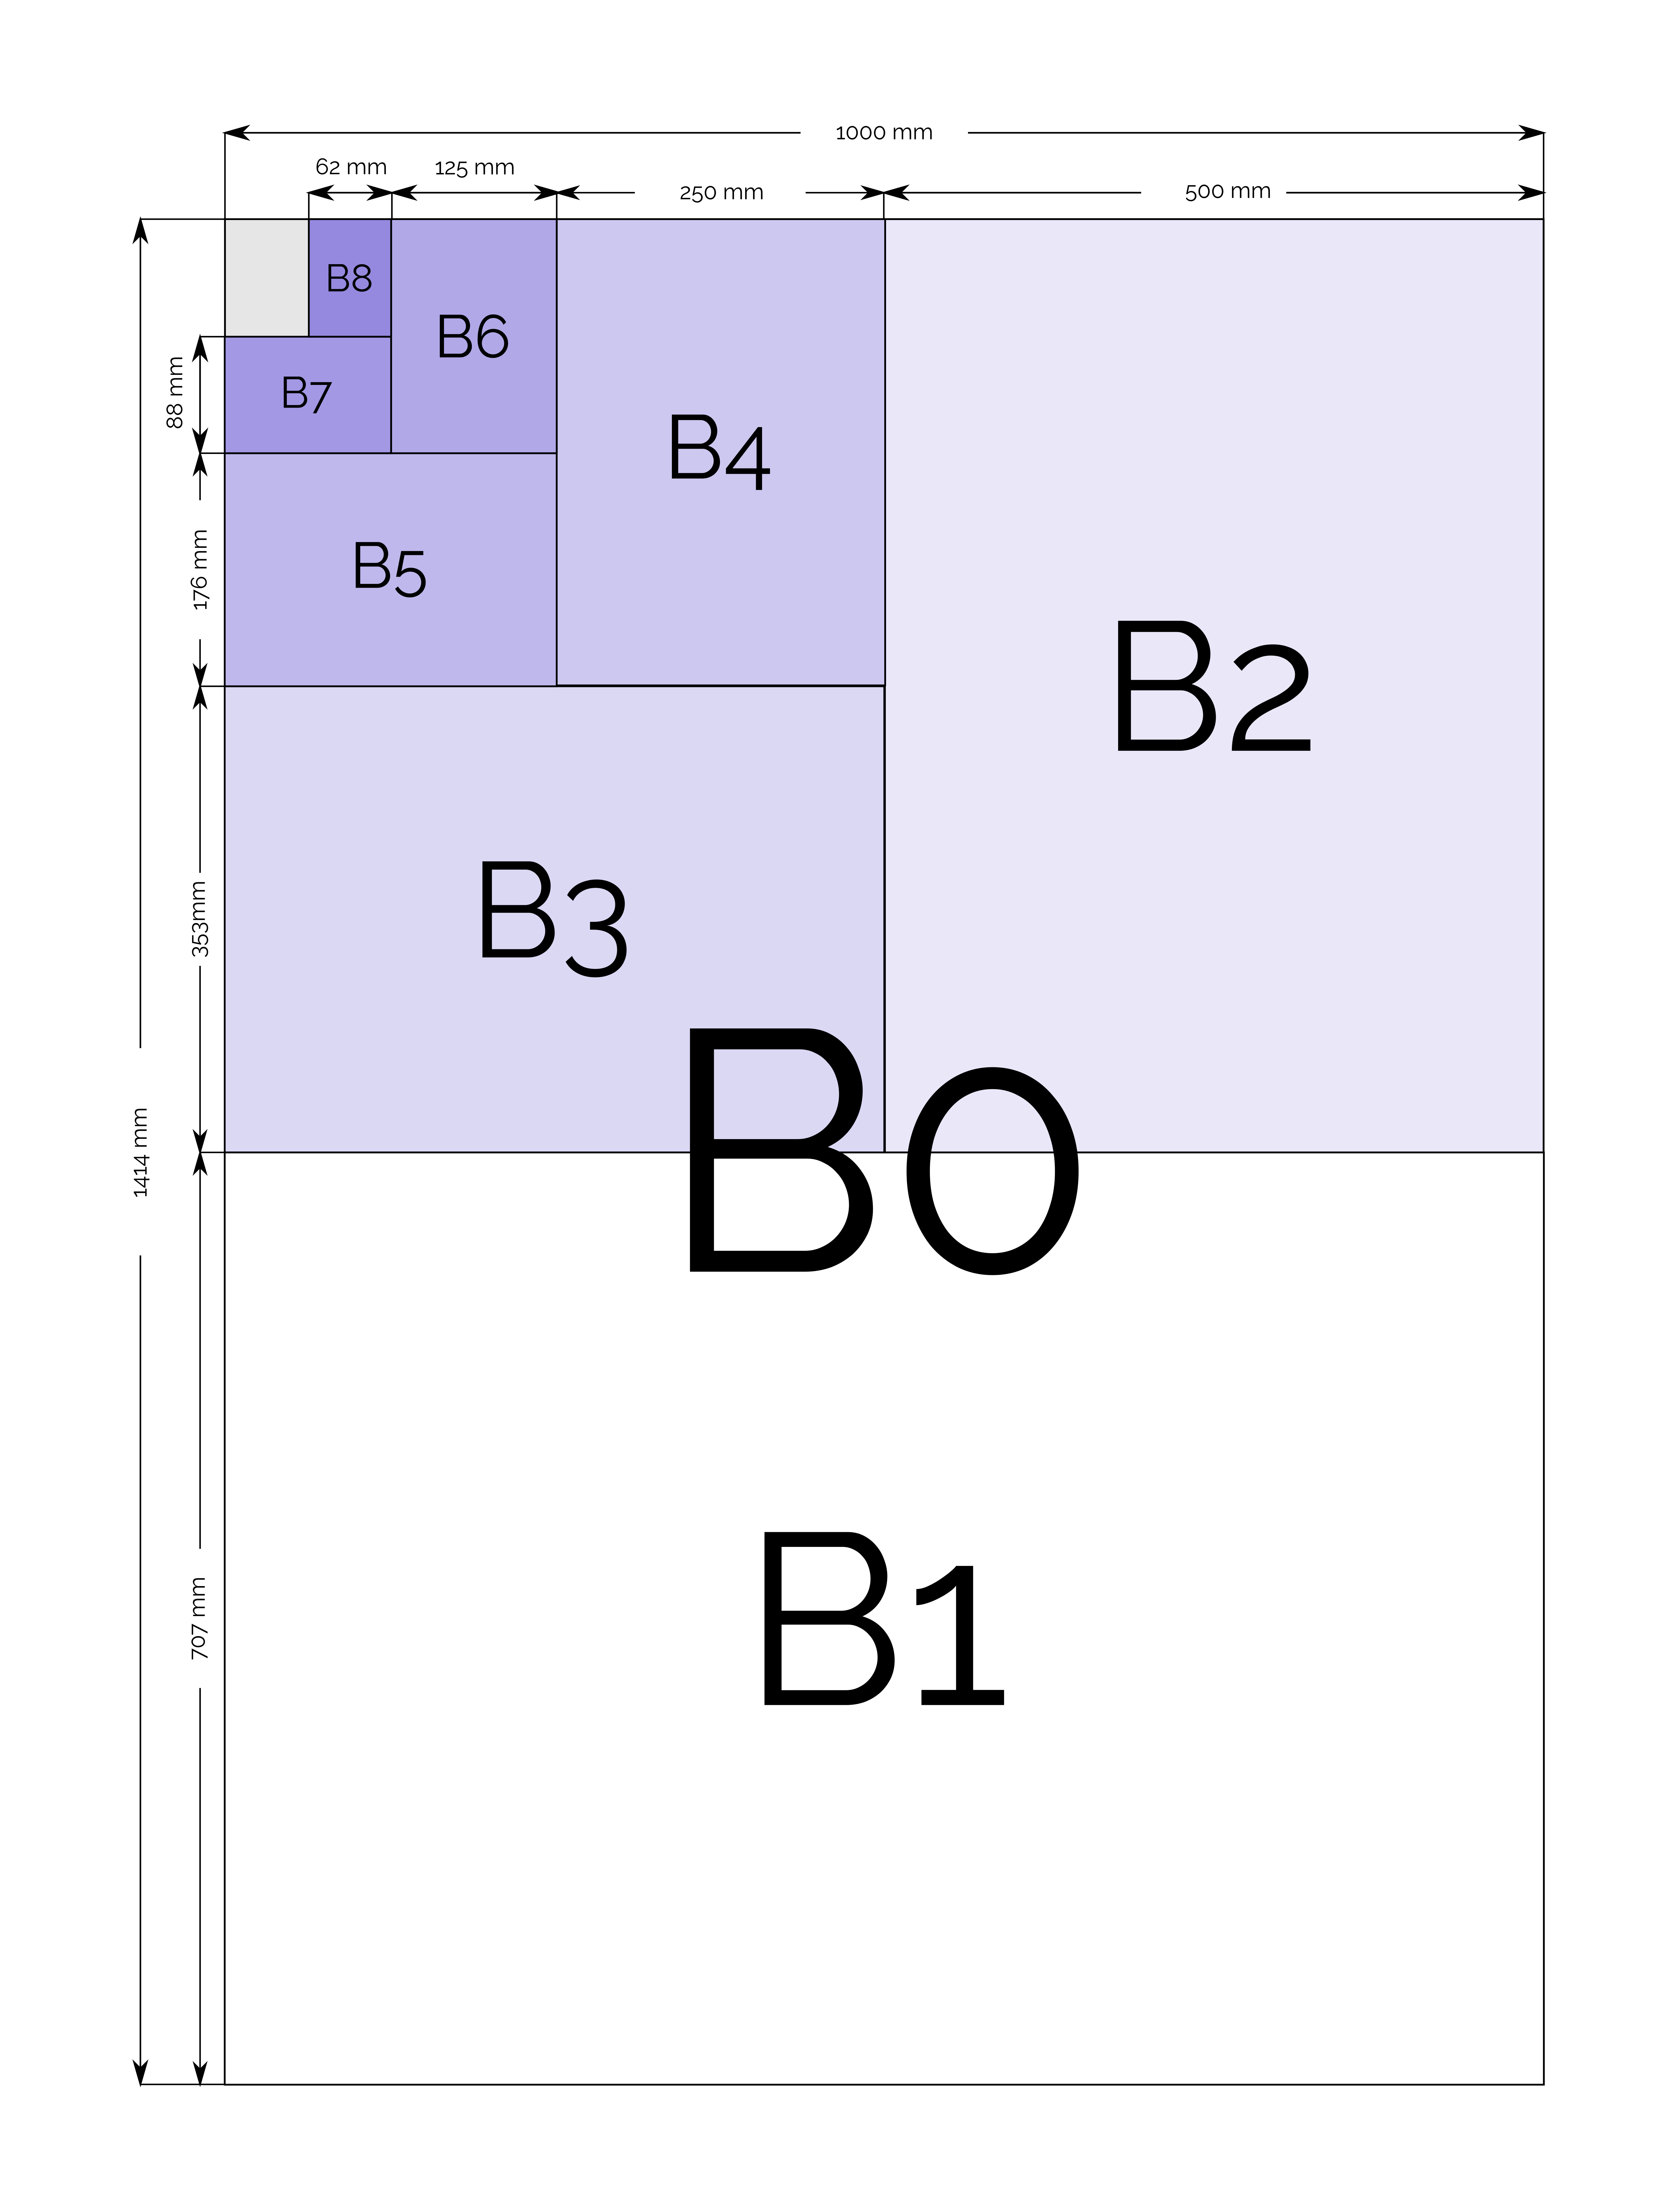 B Paper Sizes And Dimensions  B0, B1, B1+, B2, B2+, B3, B4, B5, B6, B7,  B8, B9, B10, B11, B12